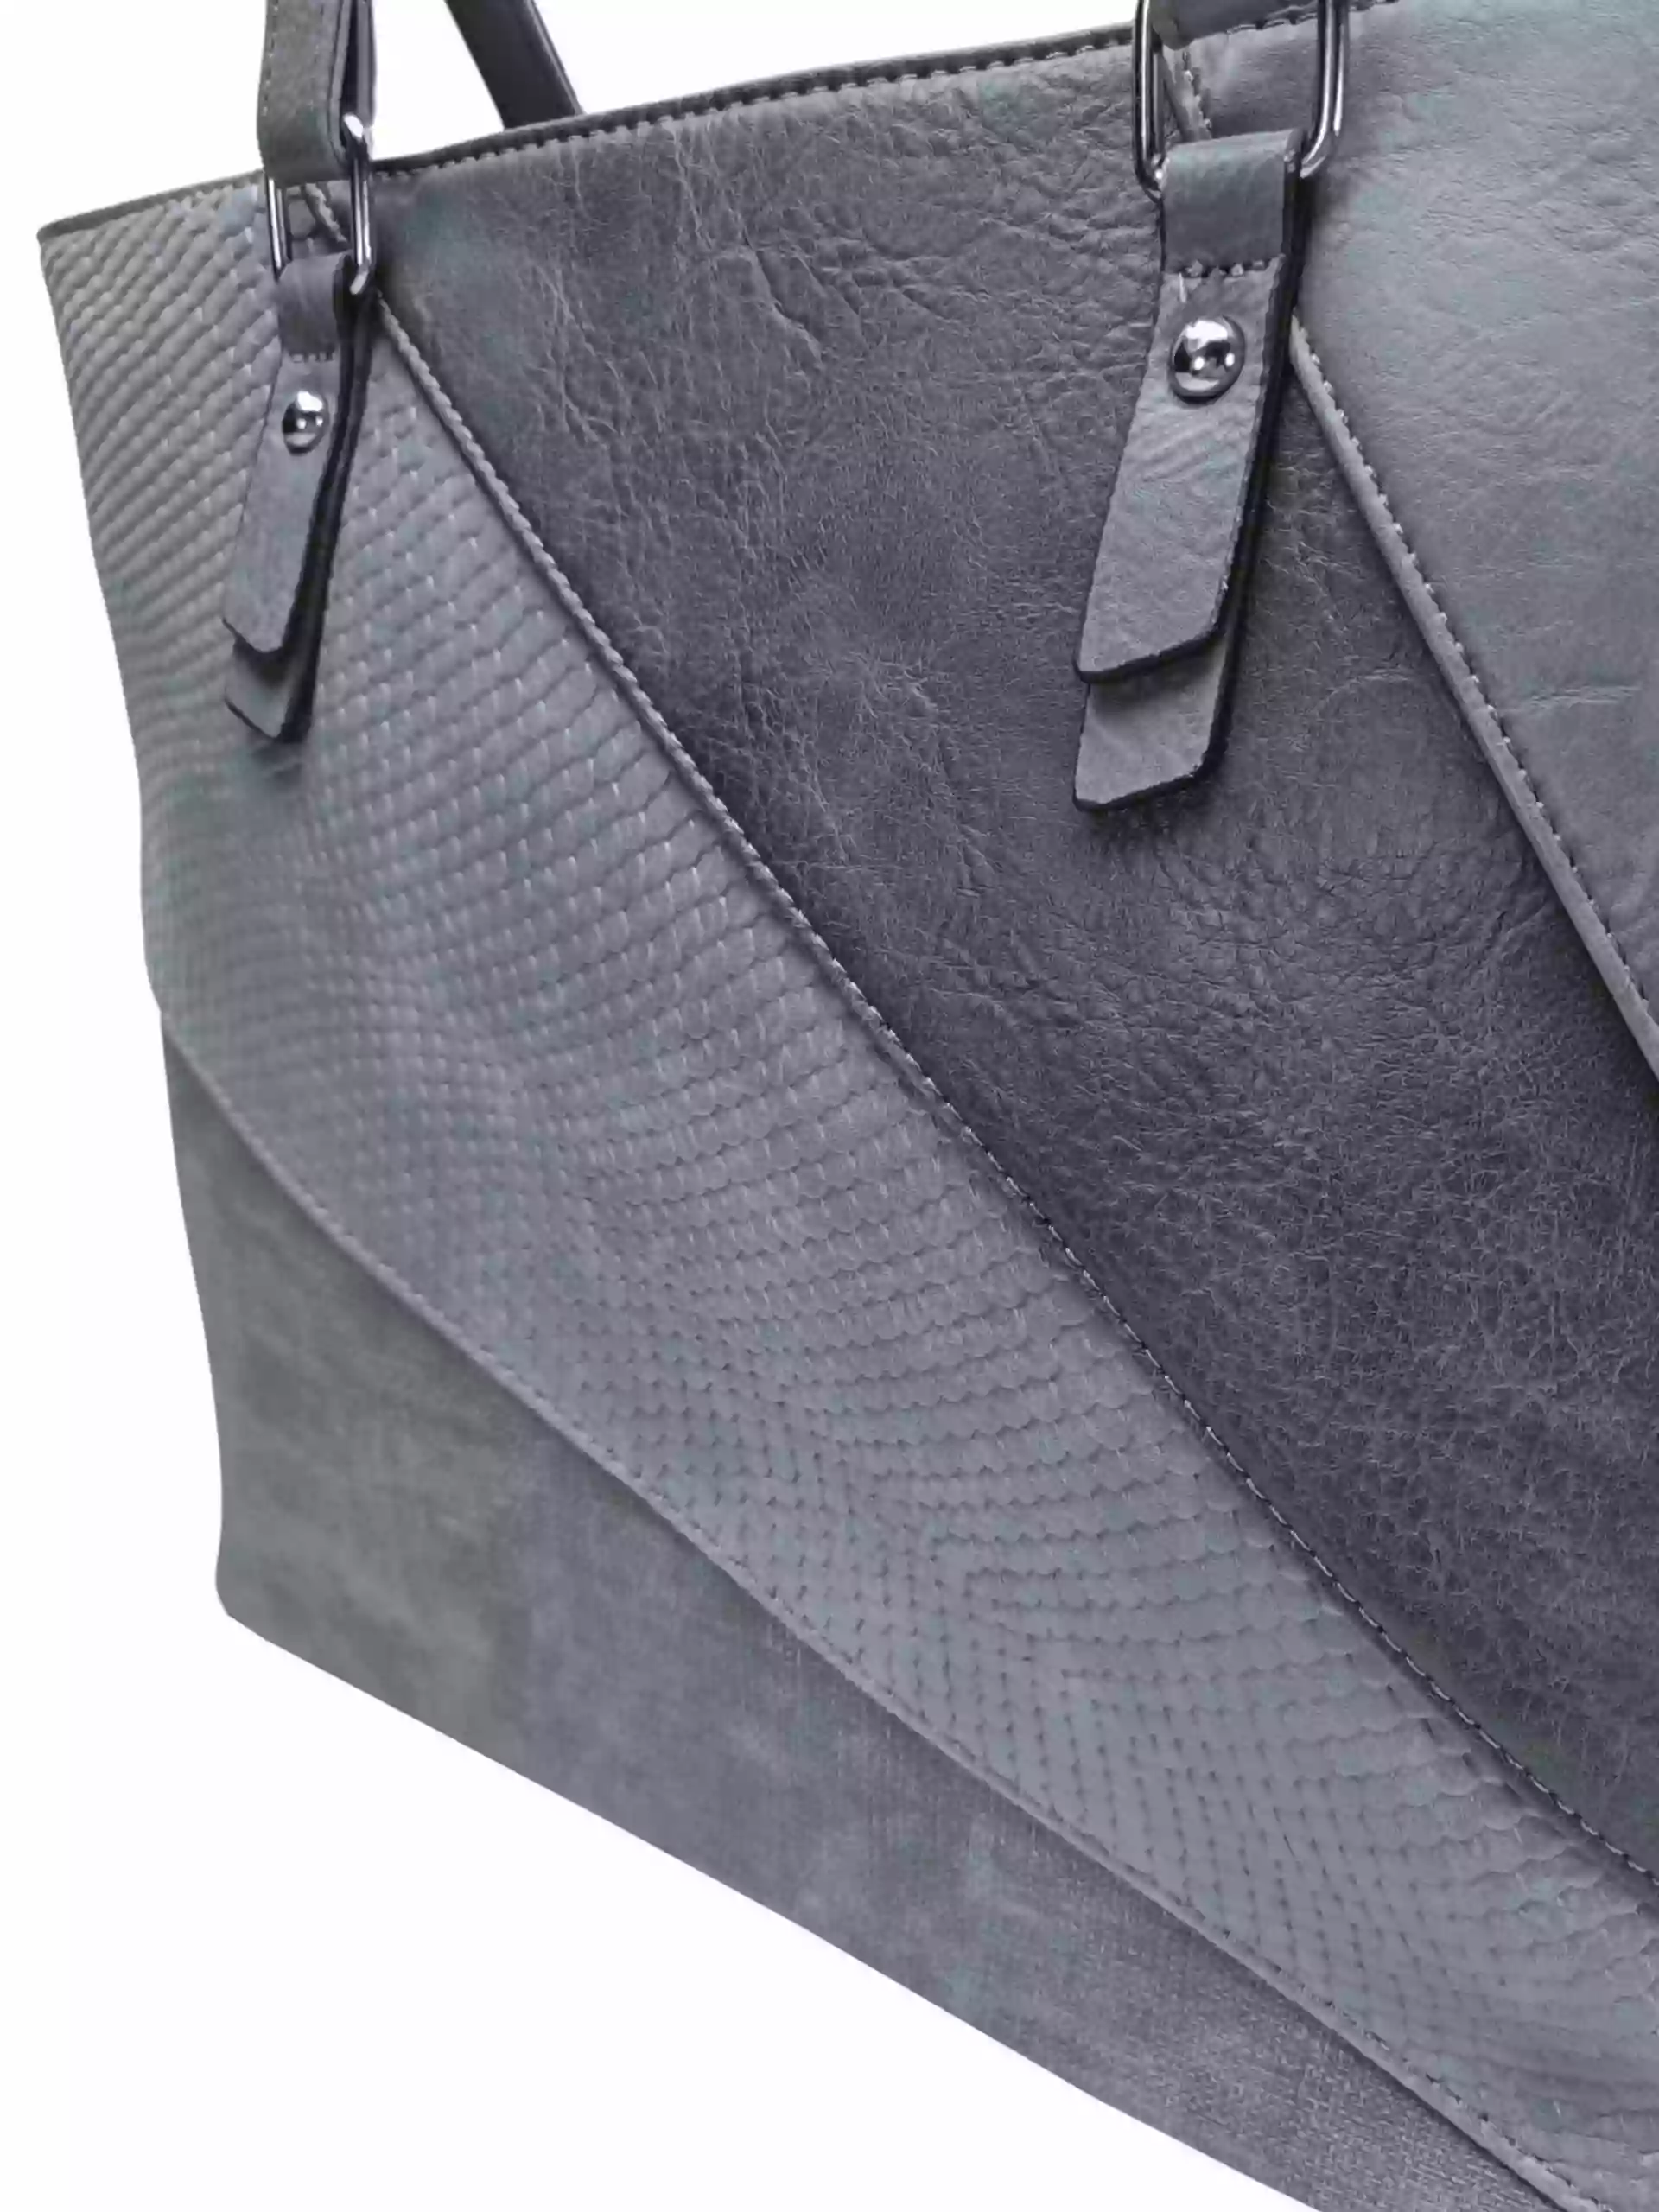 Tmavě šedá dámská kabelka přes rameno se vzory, Tapple, H17224, detail kabelky přes rameno